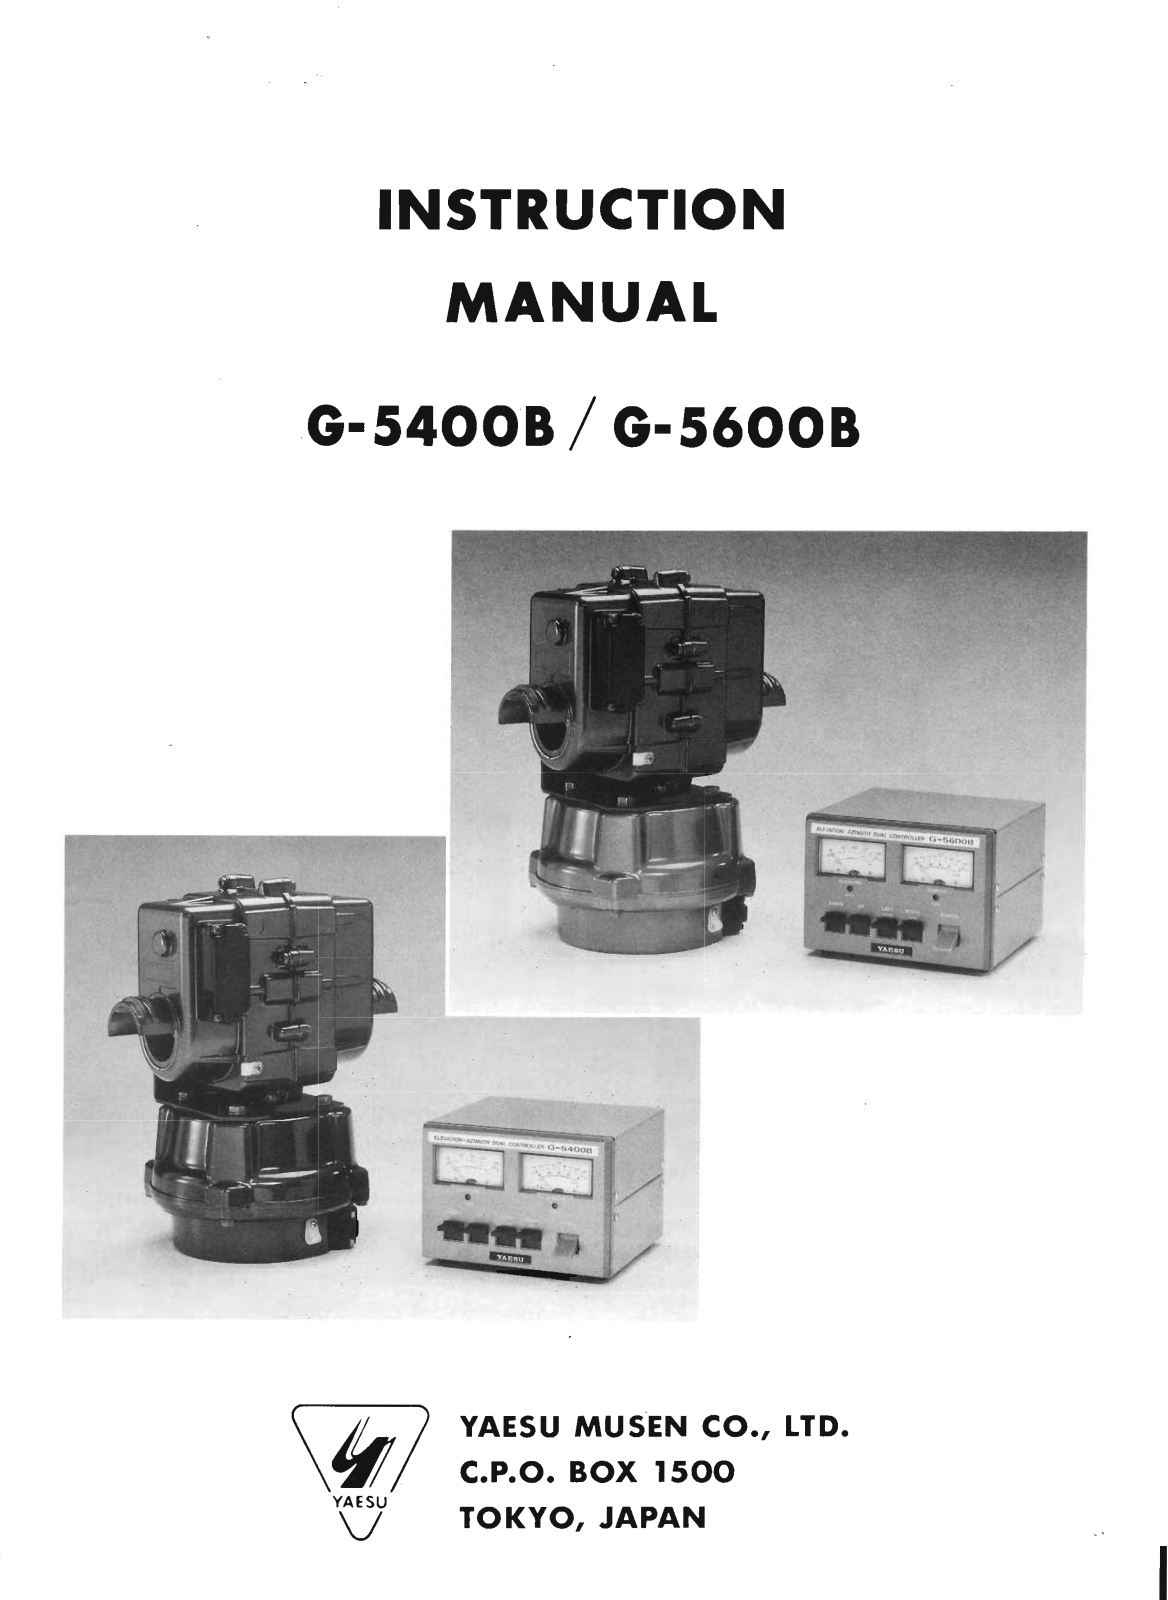 Yaesu G-5400B, G-5600B User Manual